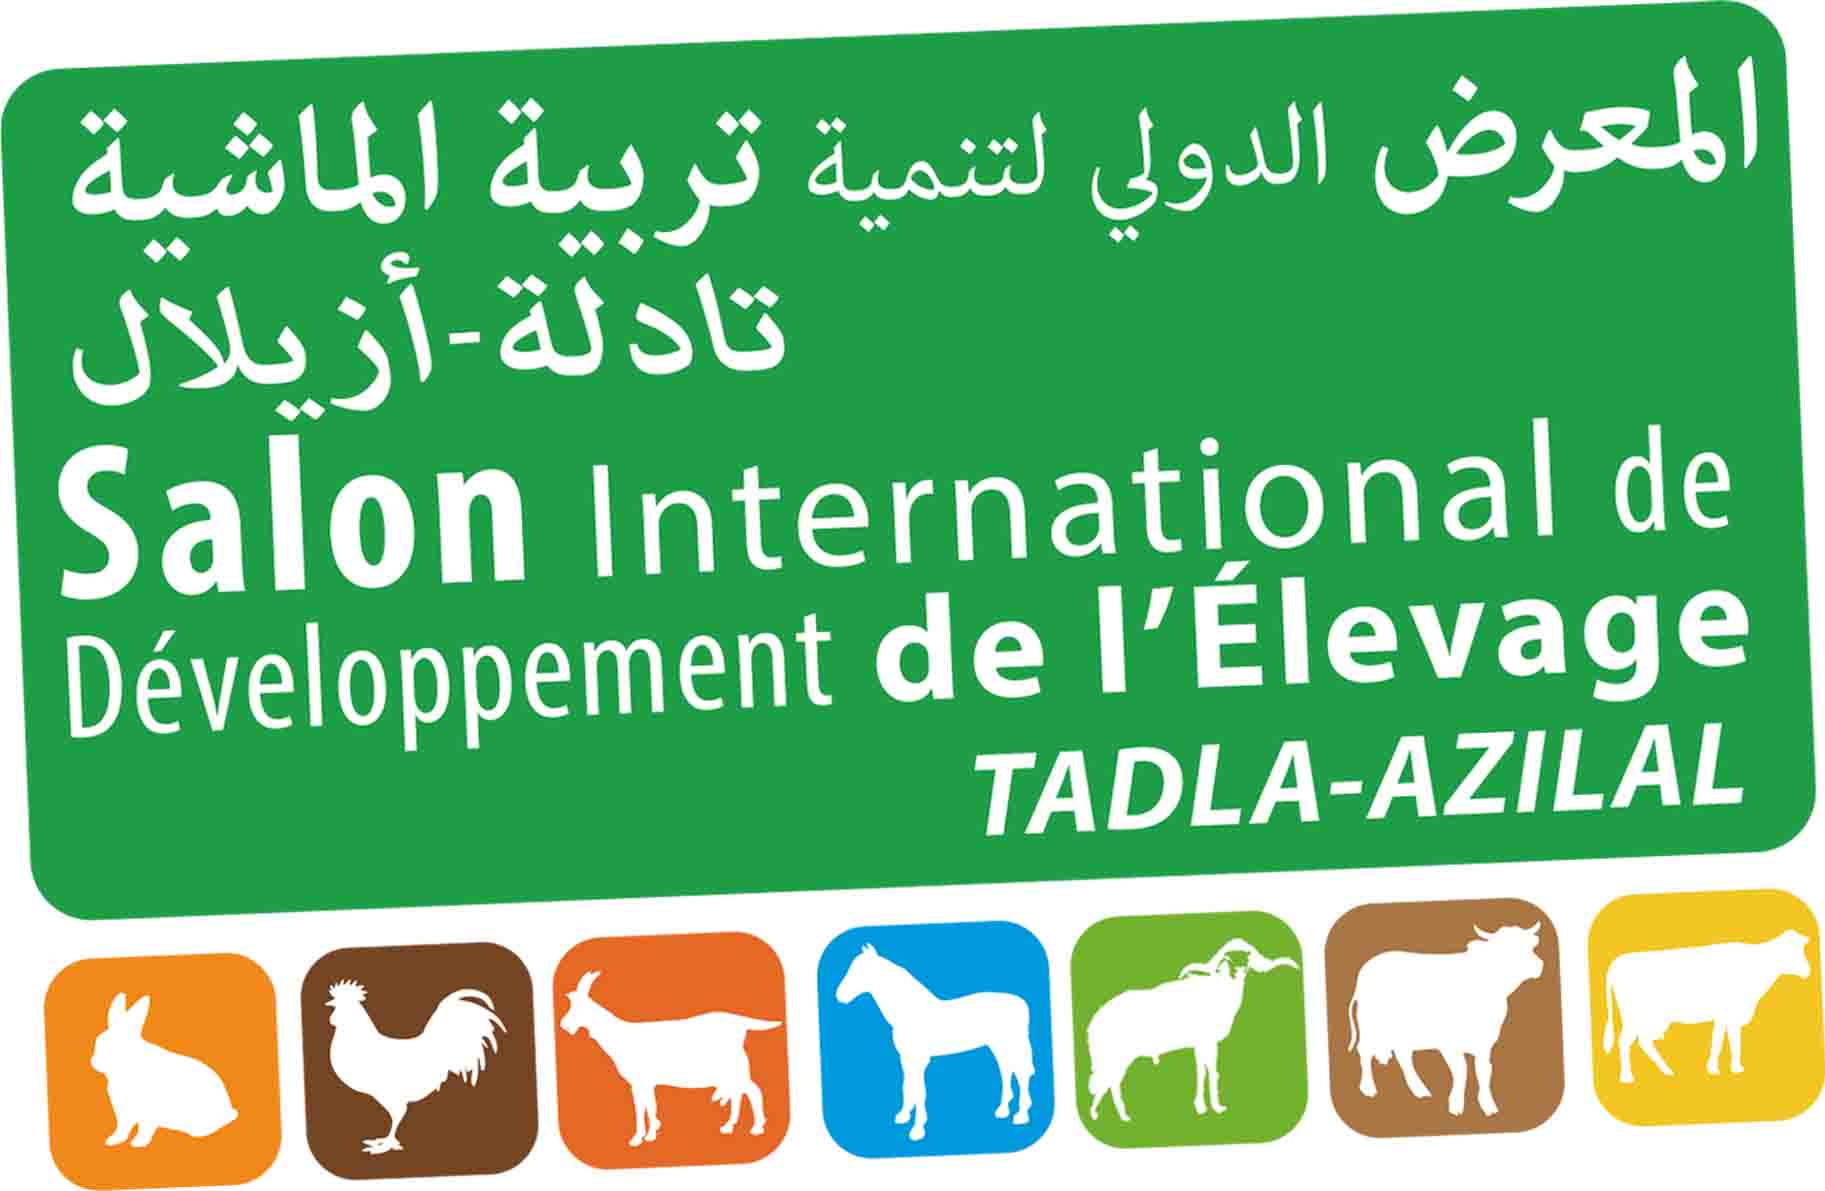 صور من البرامج الفلاحية لإذاعة مدينة إف إم بالمعرض الدولي لتنمية تربية الماشية – تادلة أزيلال –